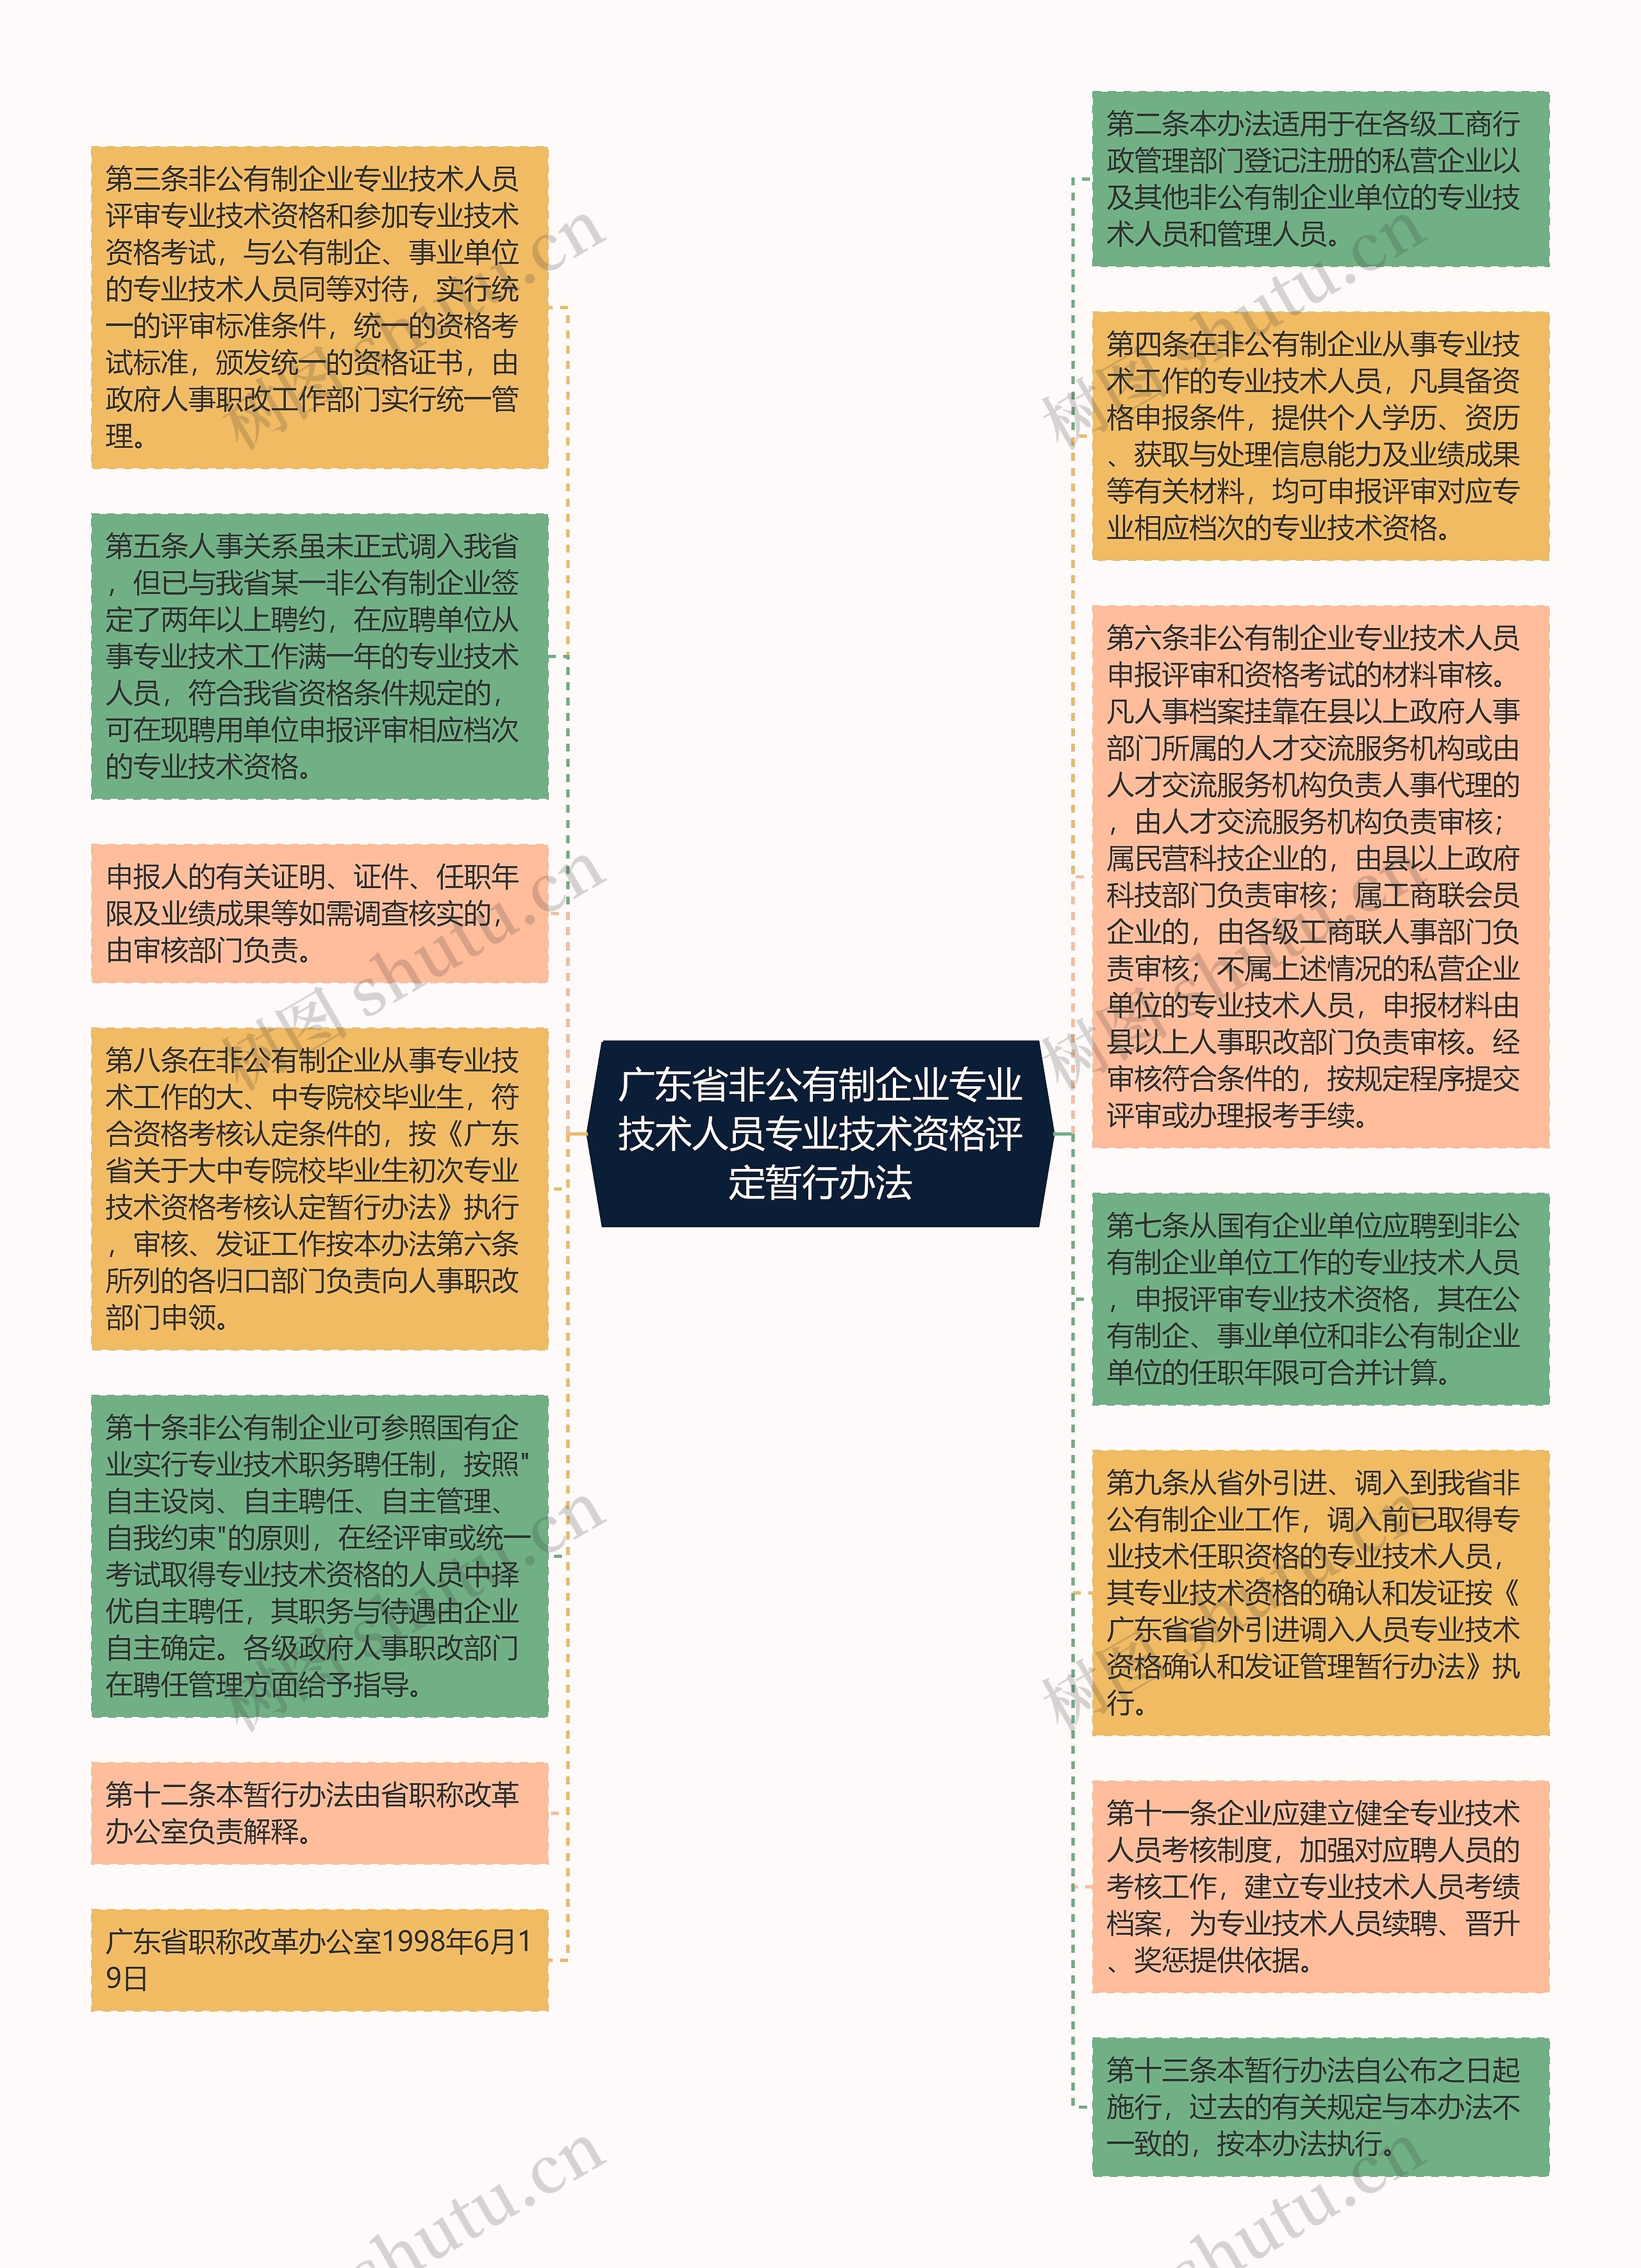 广东省非公有制企业专业技术人员专业技术资格评定暂行办法思维导图